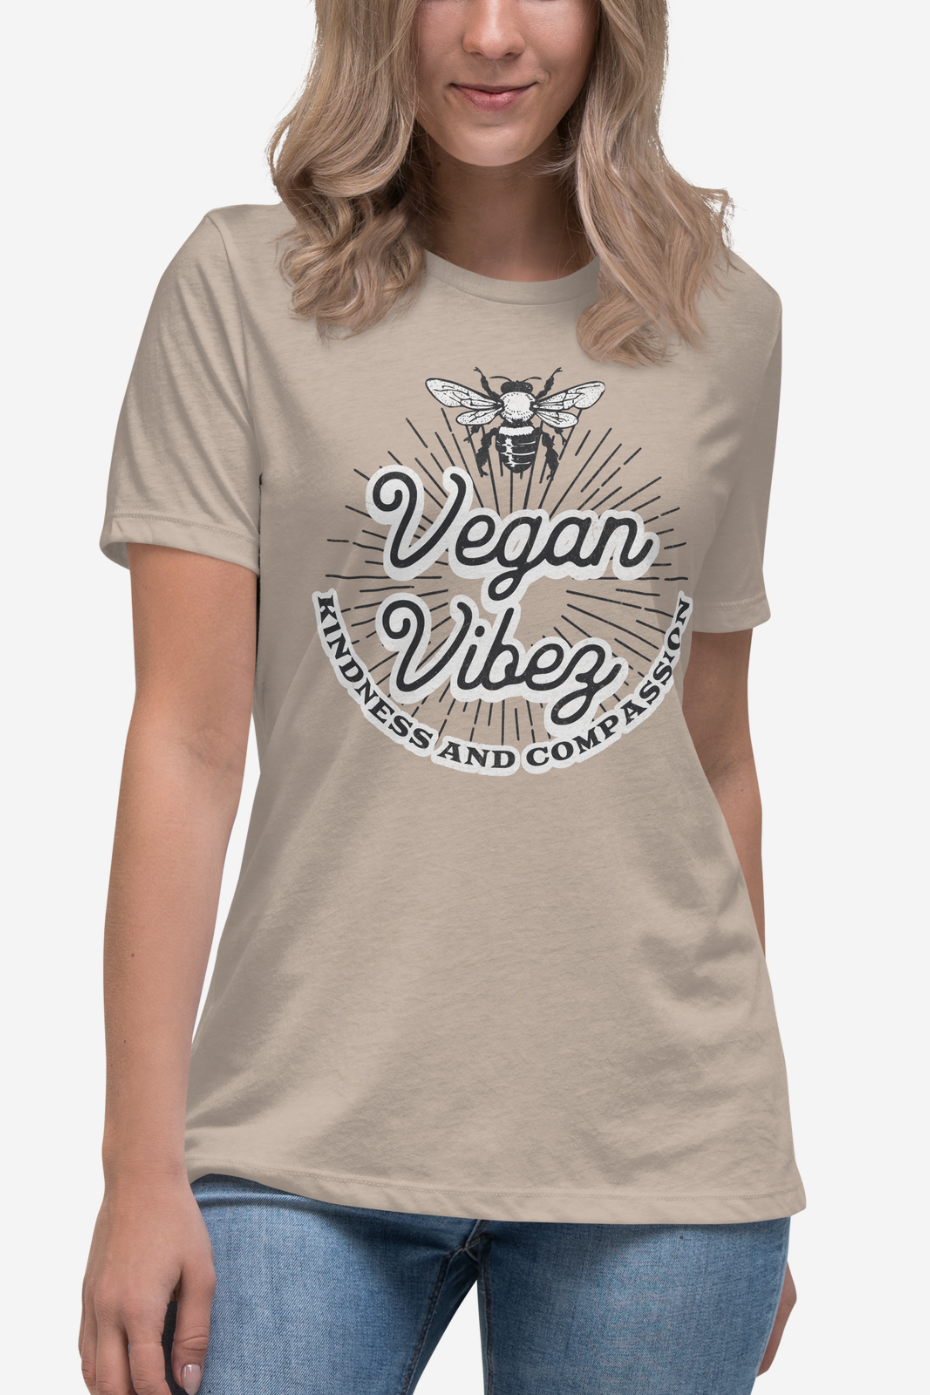 Vegan Vibez Women's Relaxed T-Shirt